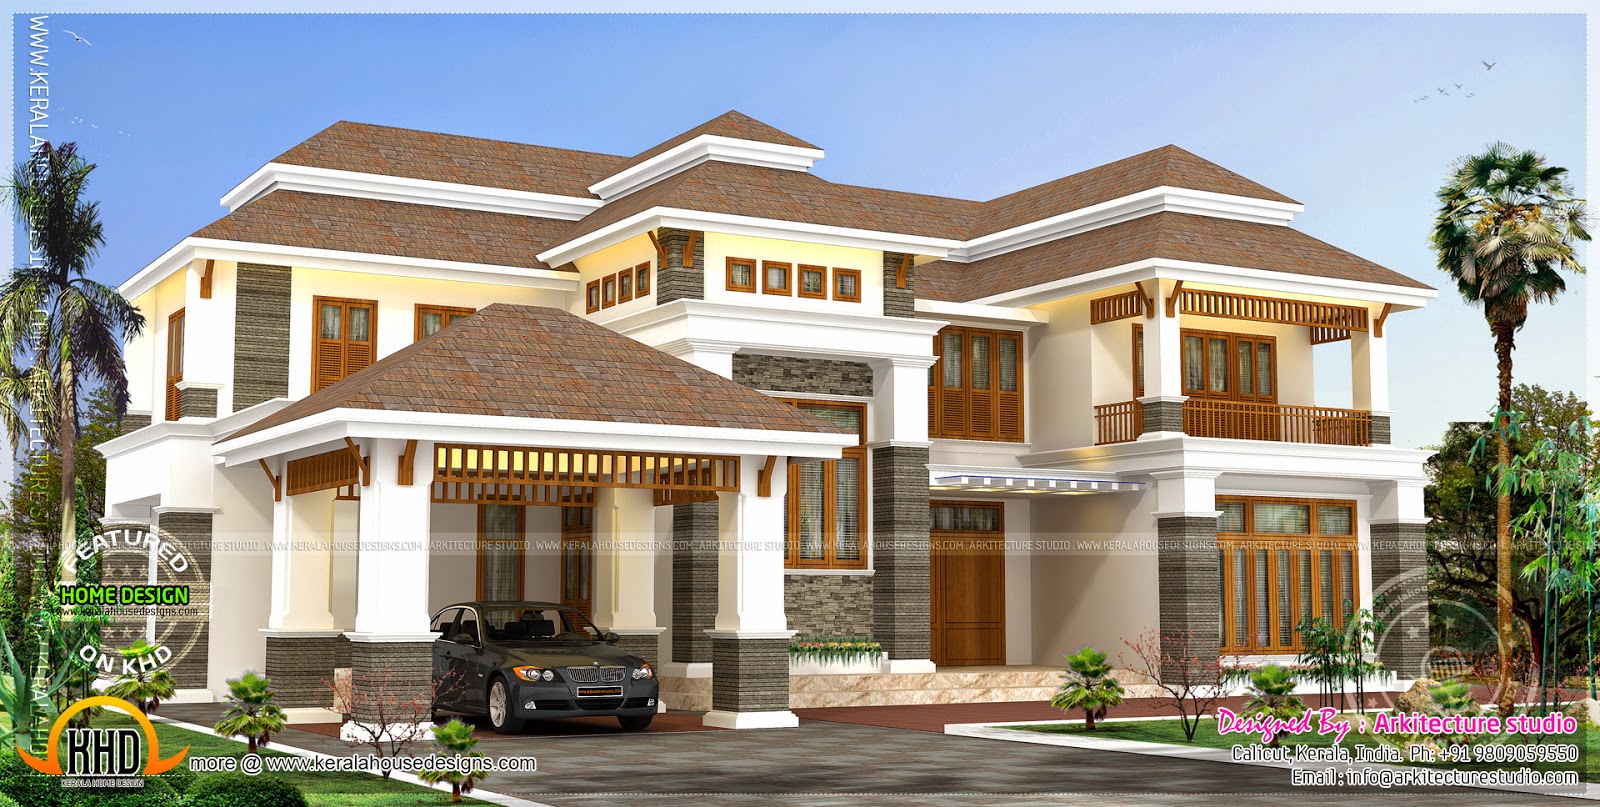 Siddu Buzz Online: Kerala home design - വീട് ഡിസൈന് 